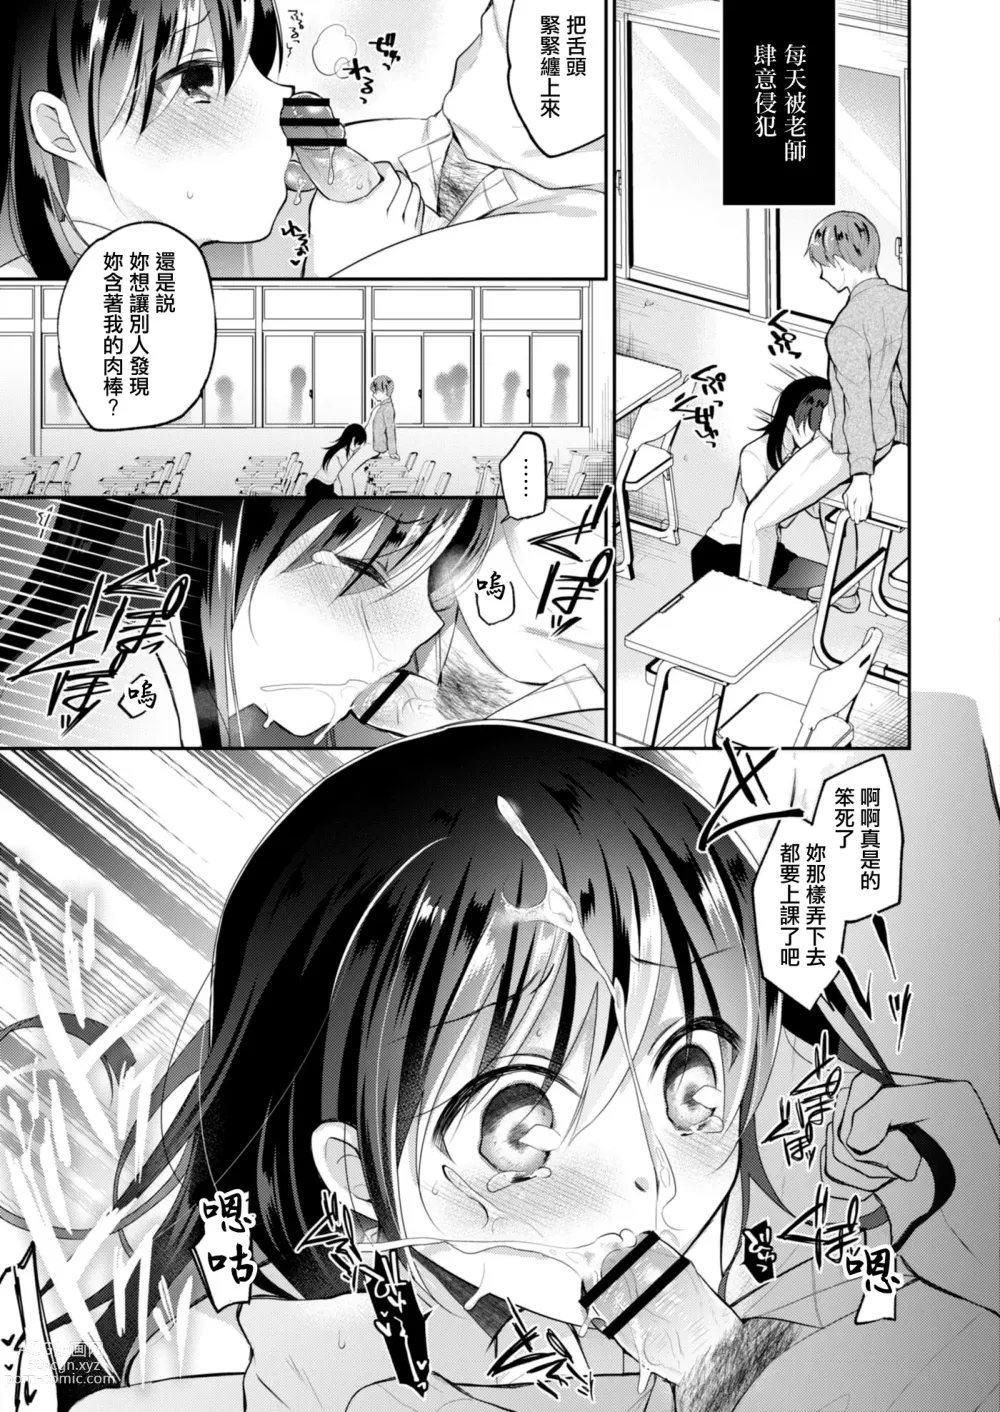 Page 8 of manga Netorare JK Kanojo File.4 Fuyu no Owari no Binetsu Kouhen